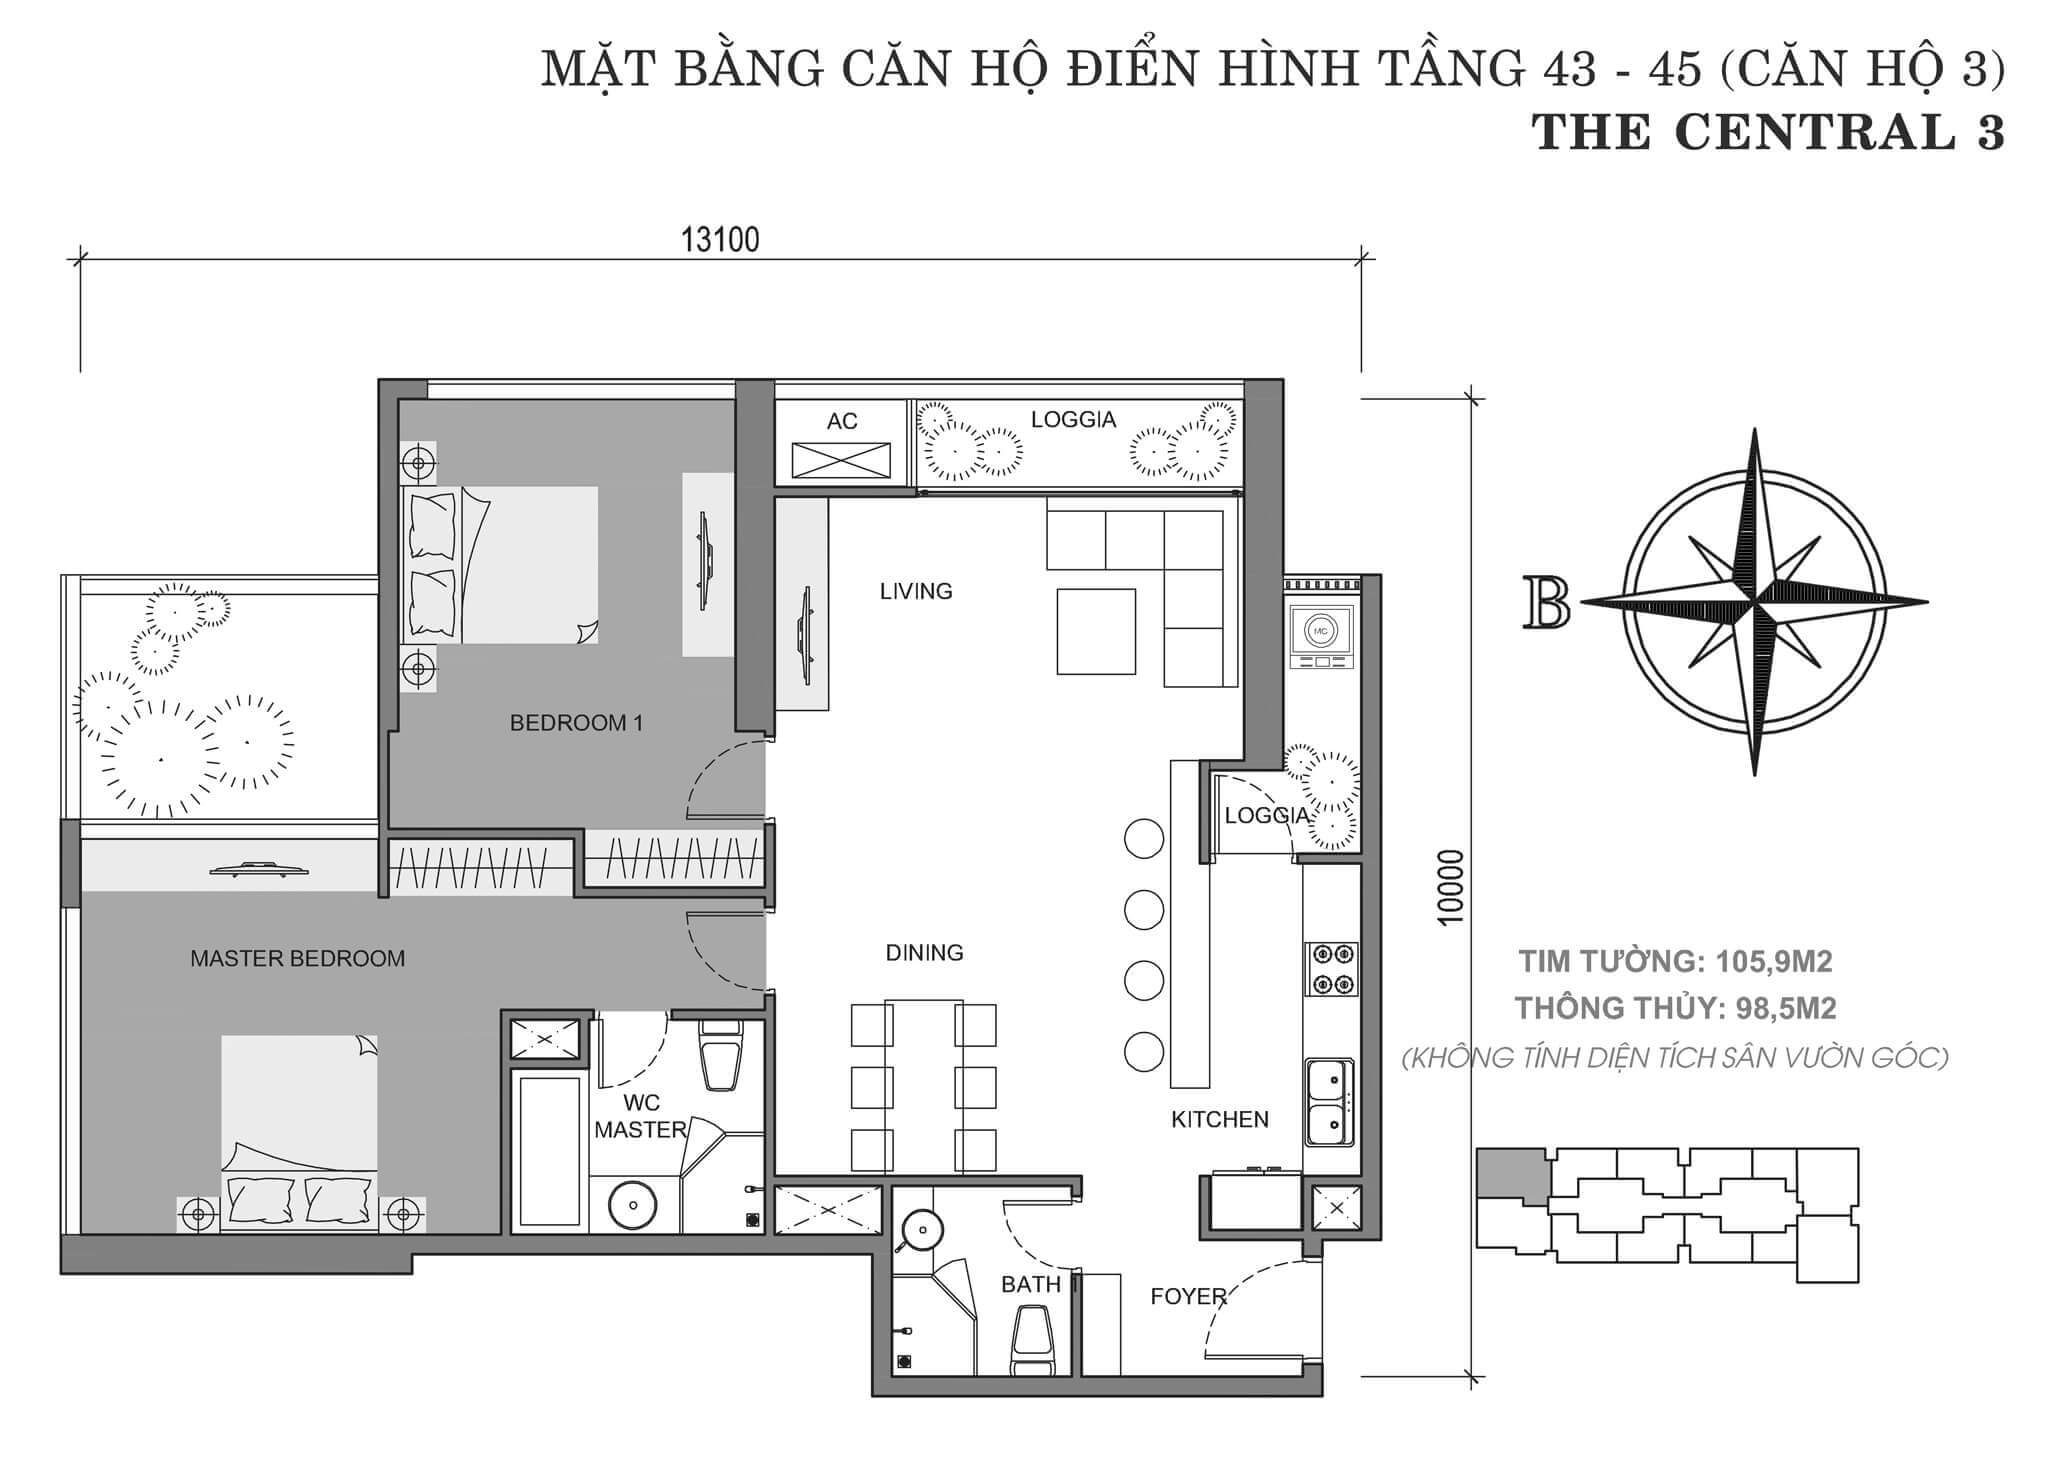 layout căn hộ số 3 tòa Central 3 tầng 43-45